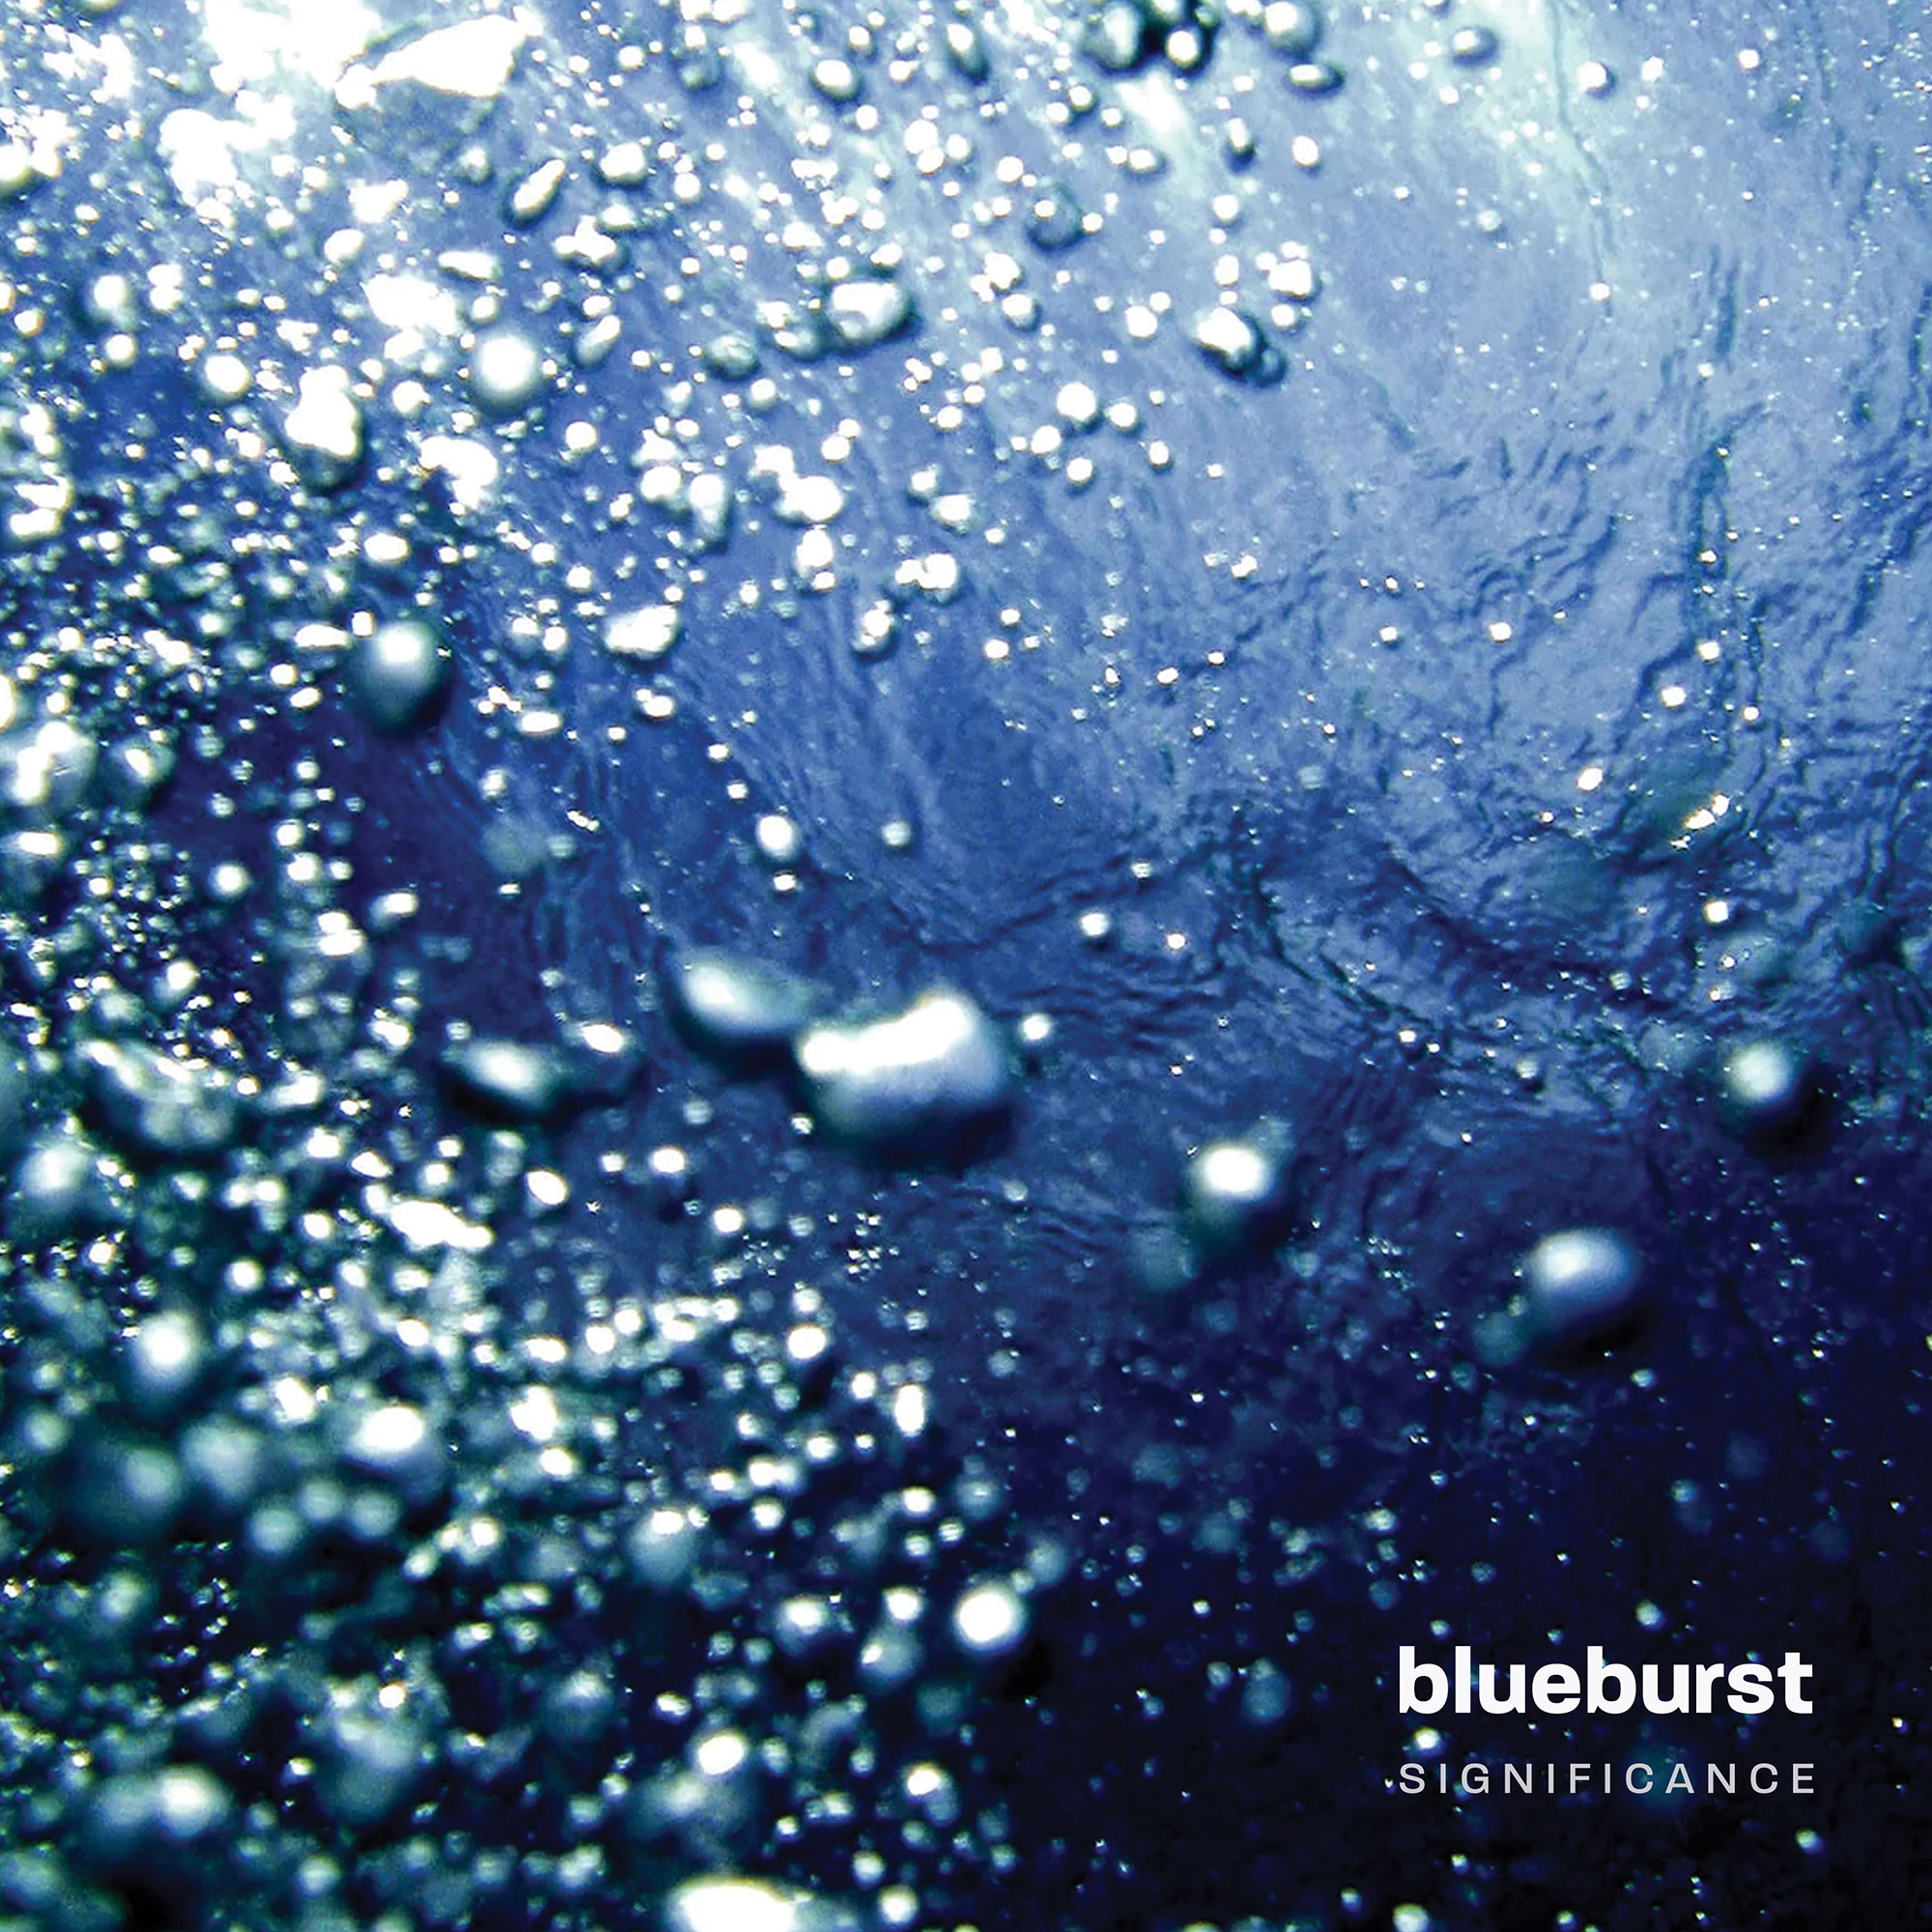  “Significance”: el estreno musical de Blueburst, una banda de rock alternativo que impresiona con su sonido y su mensaje